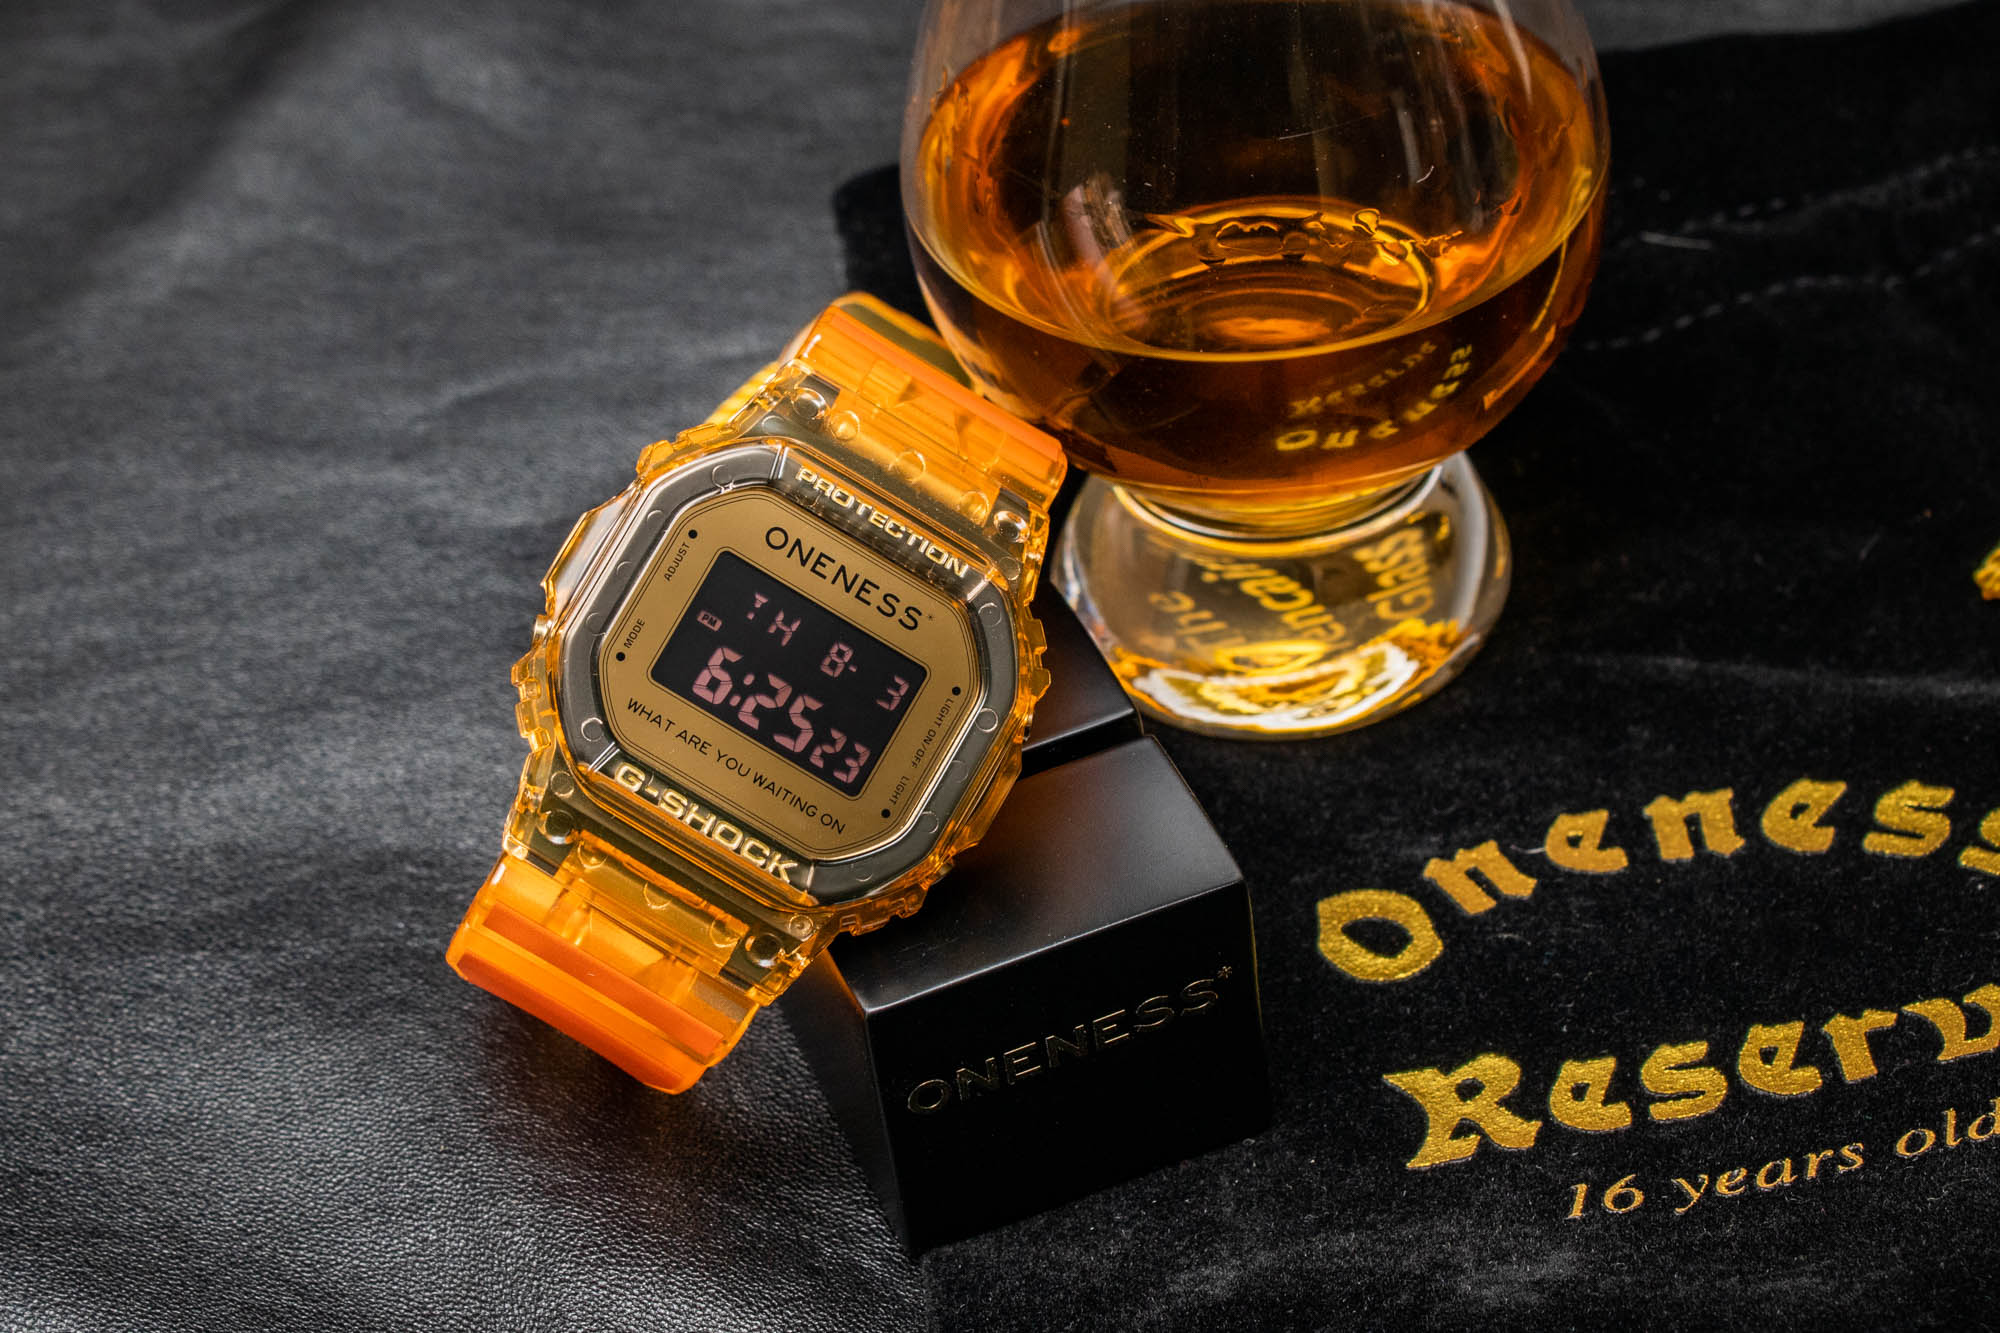 Обзор доступных часов: Casio G-Shock X Oneness DW5600ONS234 Kentucky Bourbon